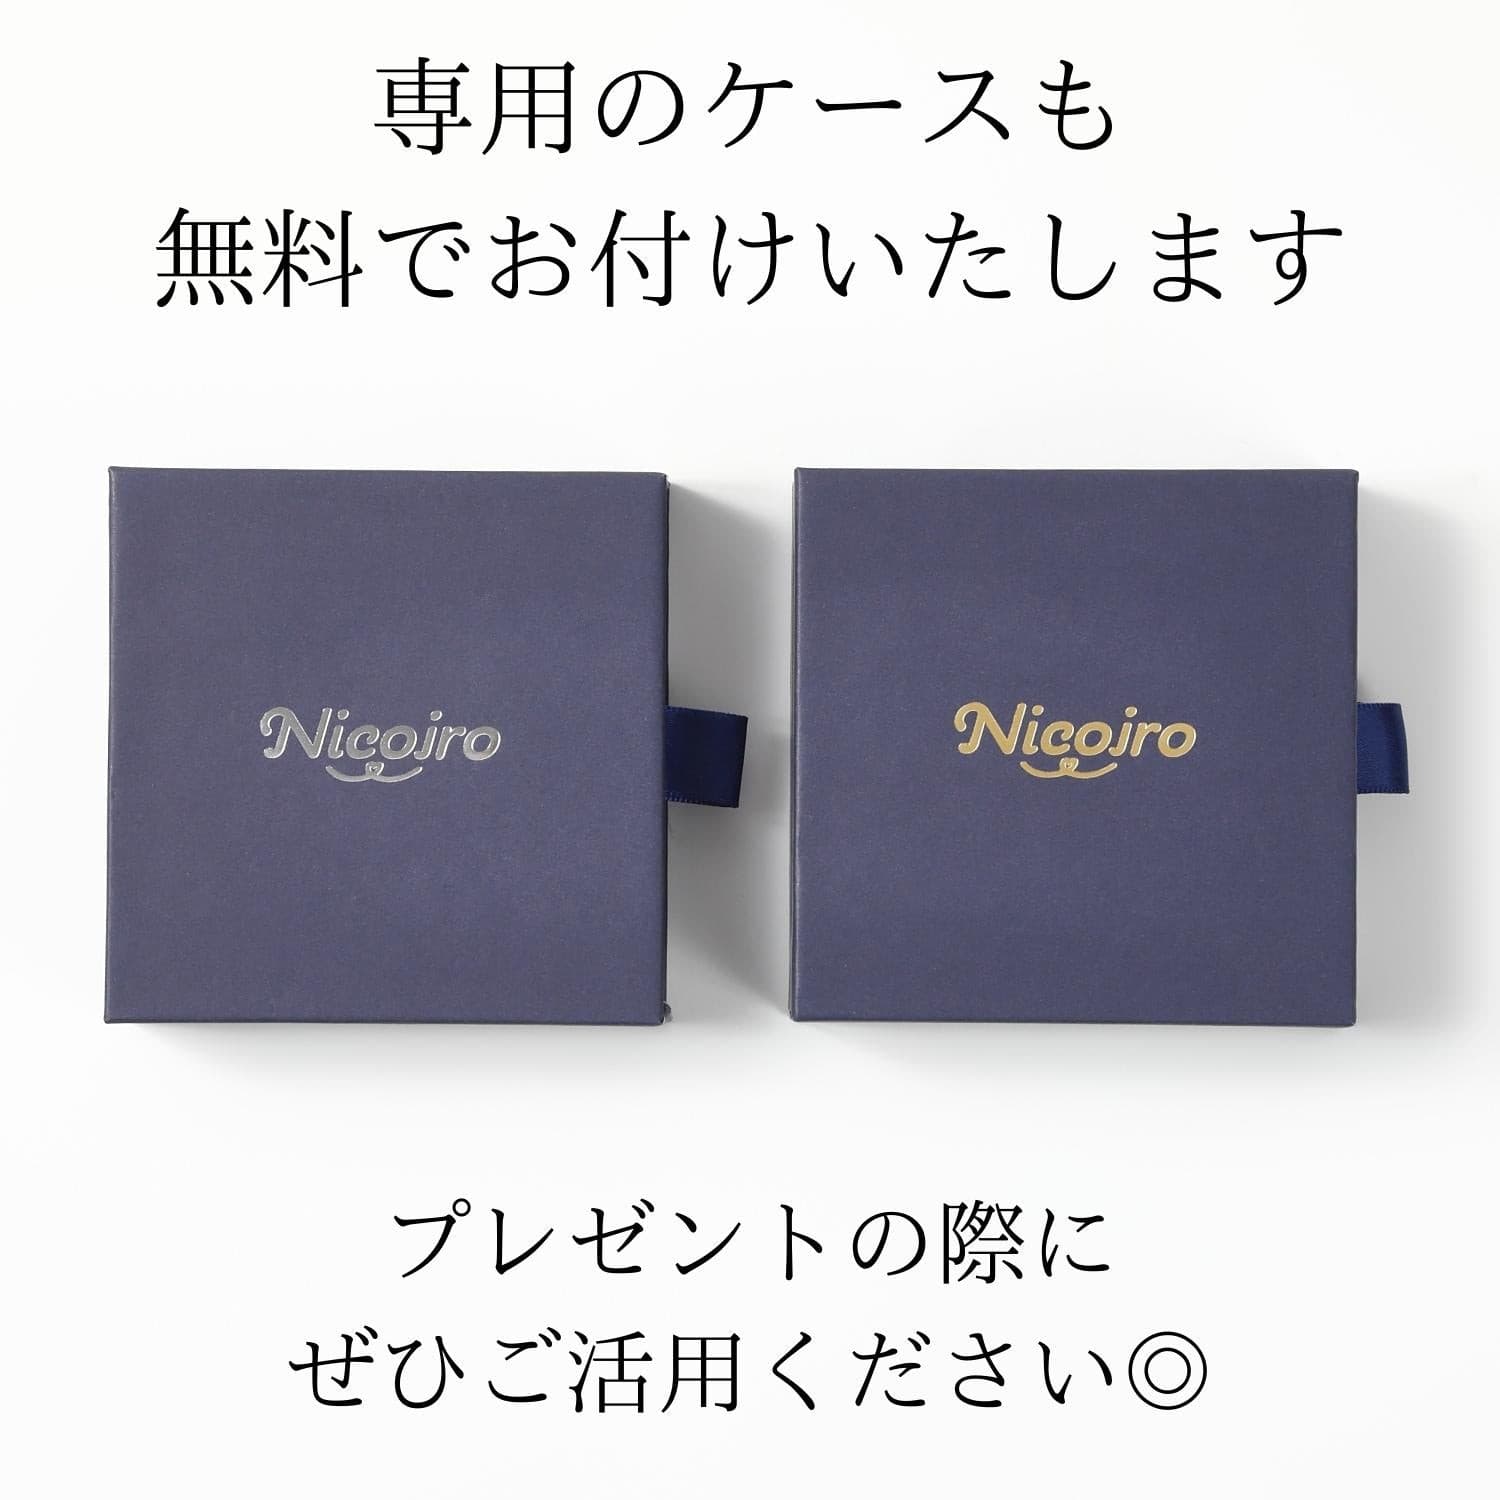 ペアネックレス クジラ 蝶々 星空 S925製【NSPN26】  ネックレス Nicoiro Official Store ペアルック.